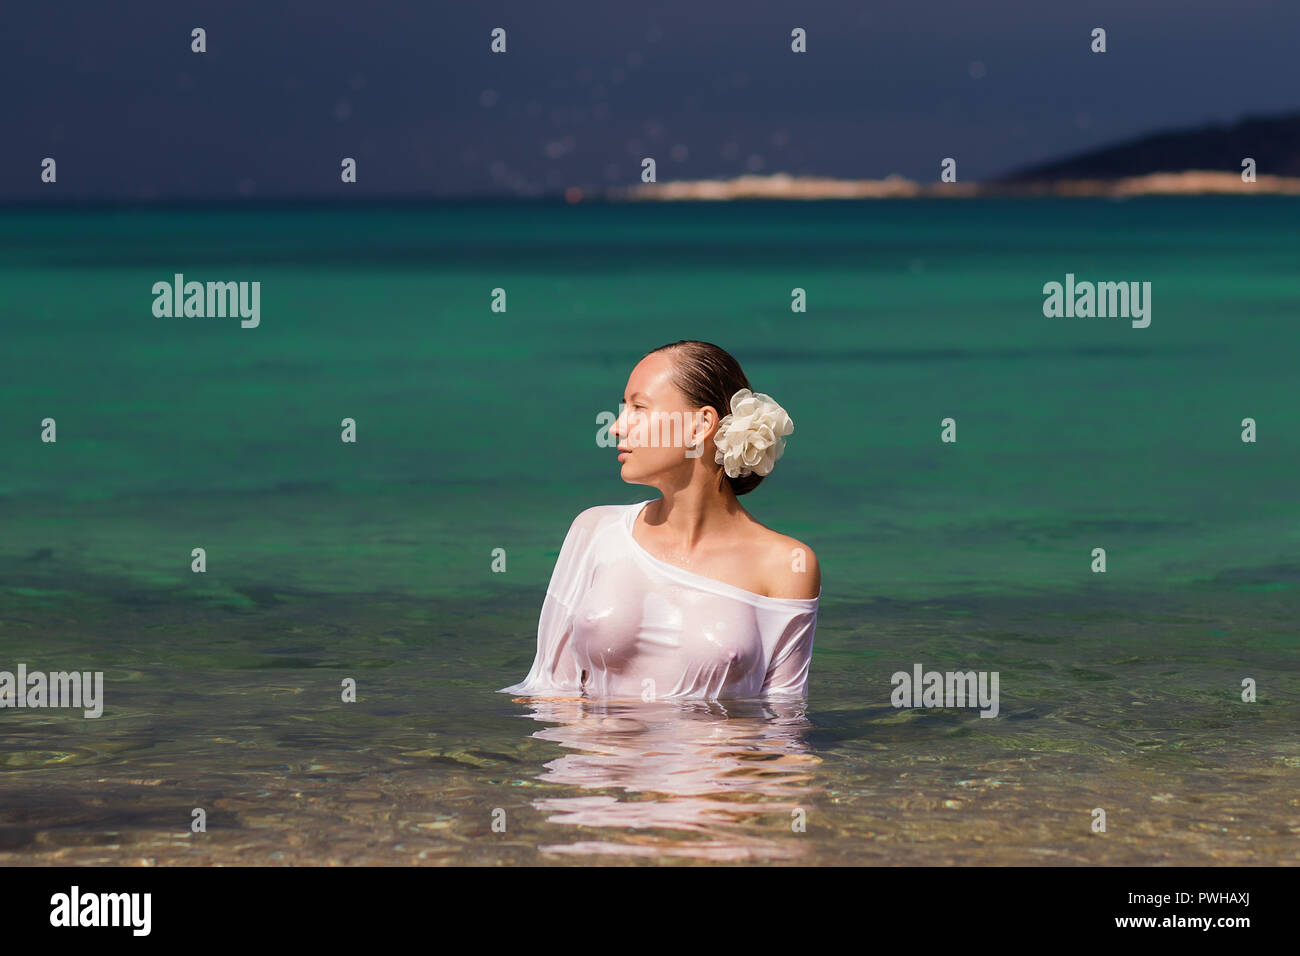 Sinnliche junge Frau in nassen Bluse in sauberem Meerwasser und Wegsehen  Stockfotografie - Alamy